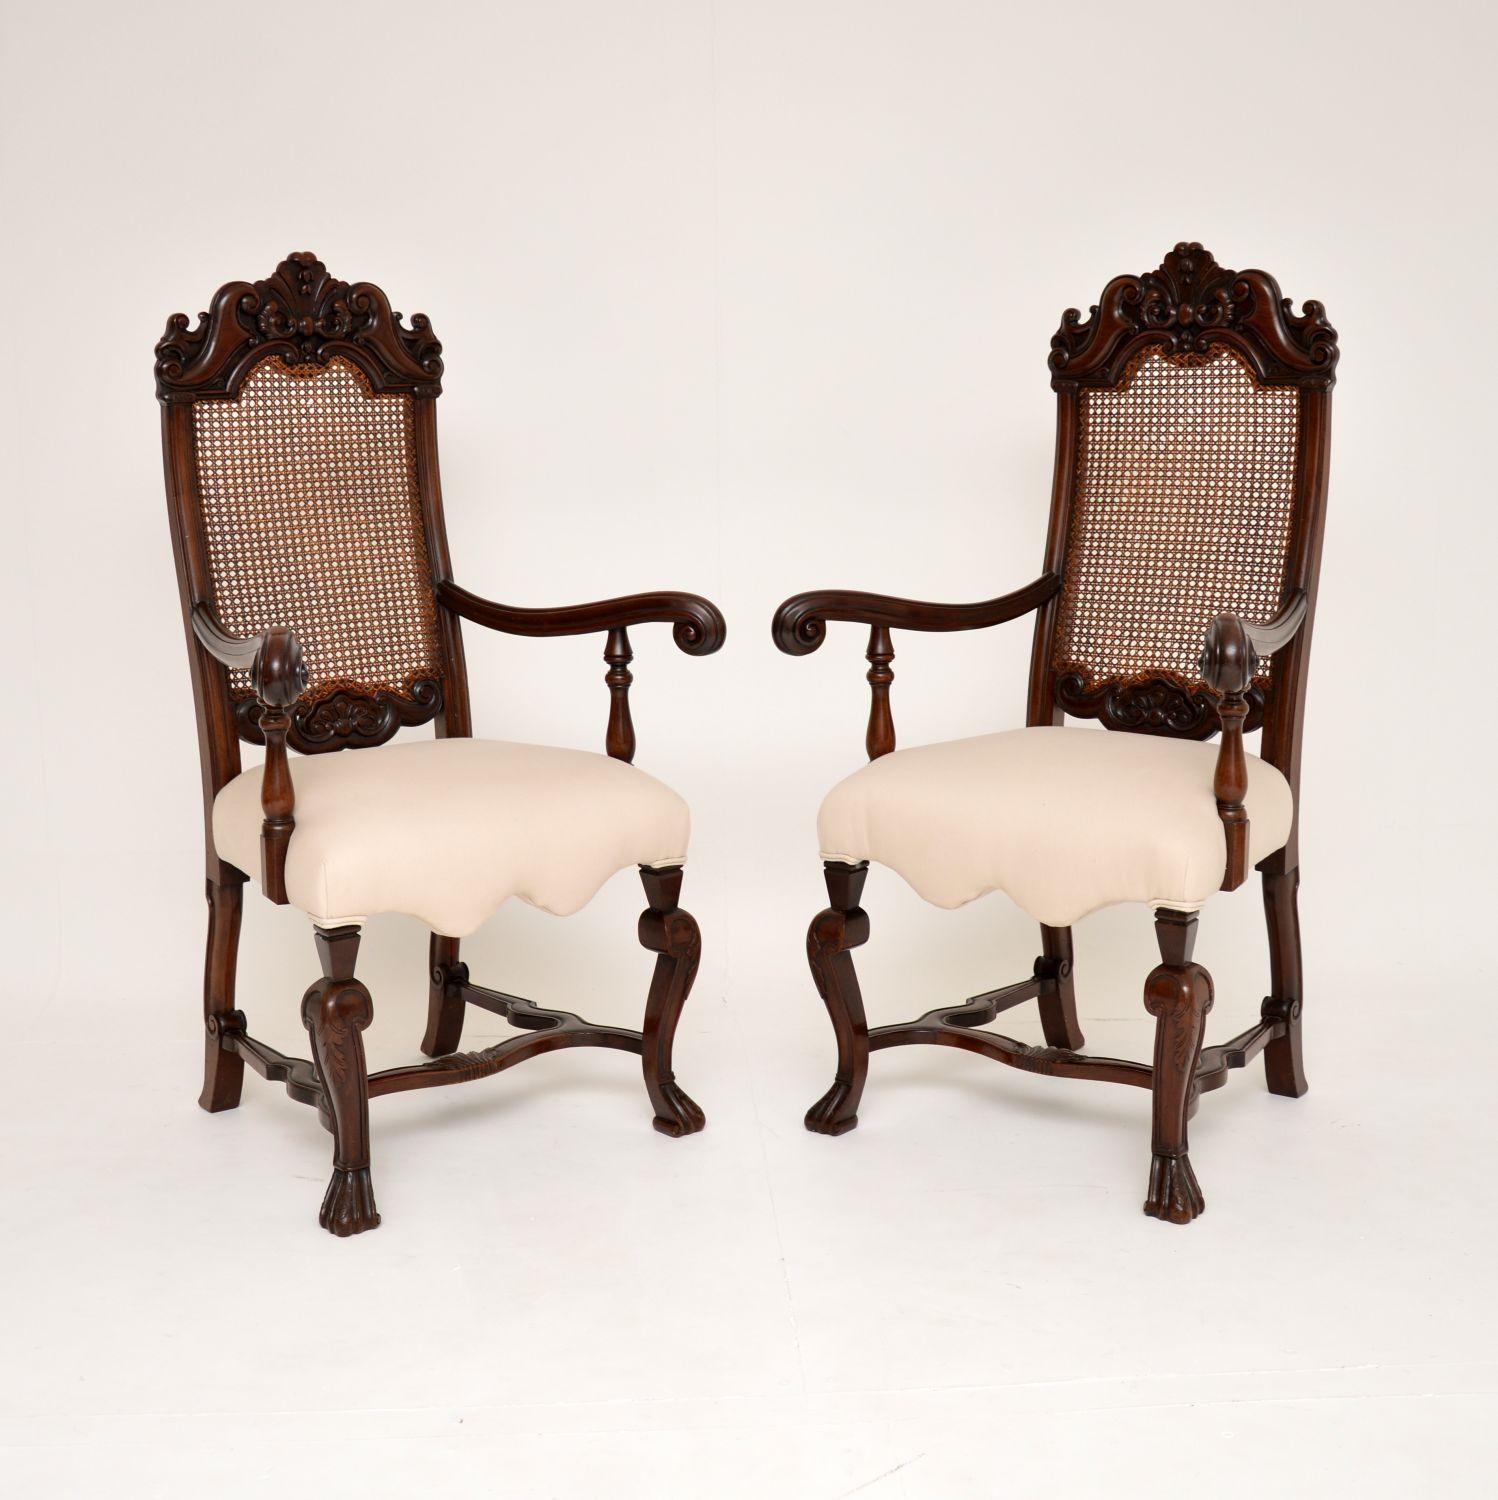 Ein hervorragendes Paar antiker Sessel aus geschnitztem Nussbaum im Carolean-Stil mit Rohrrücken. Sie wurden in England hergestellt und stammen aus der Zeit zwischen 1880 und 1900.

Die Qualität ist absolut erstaunlich, mit feinen Schnitzereien